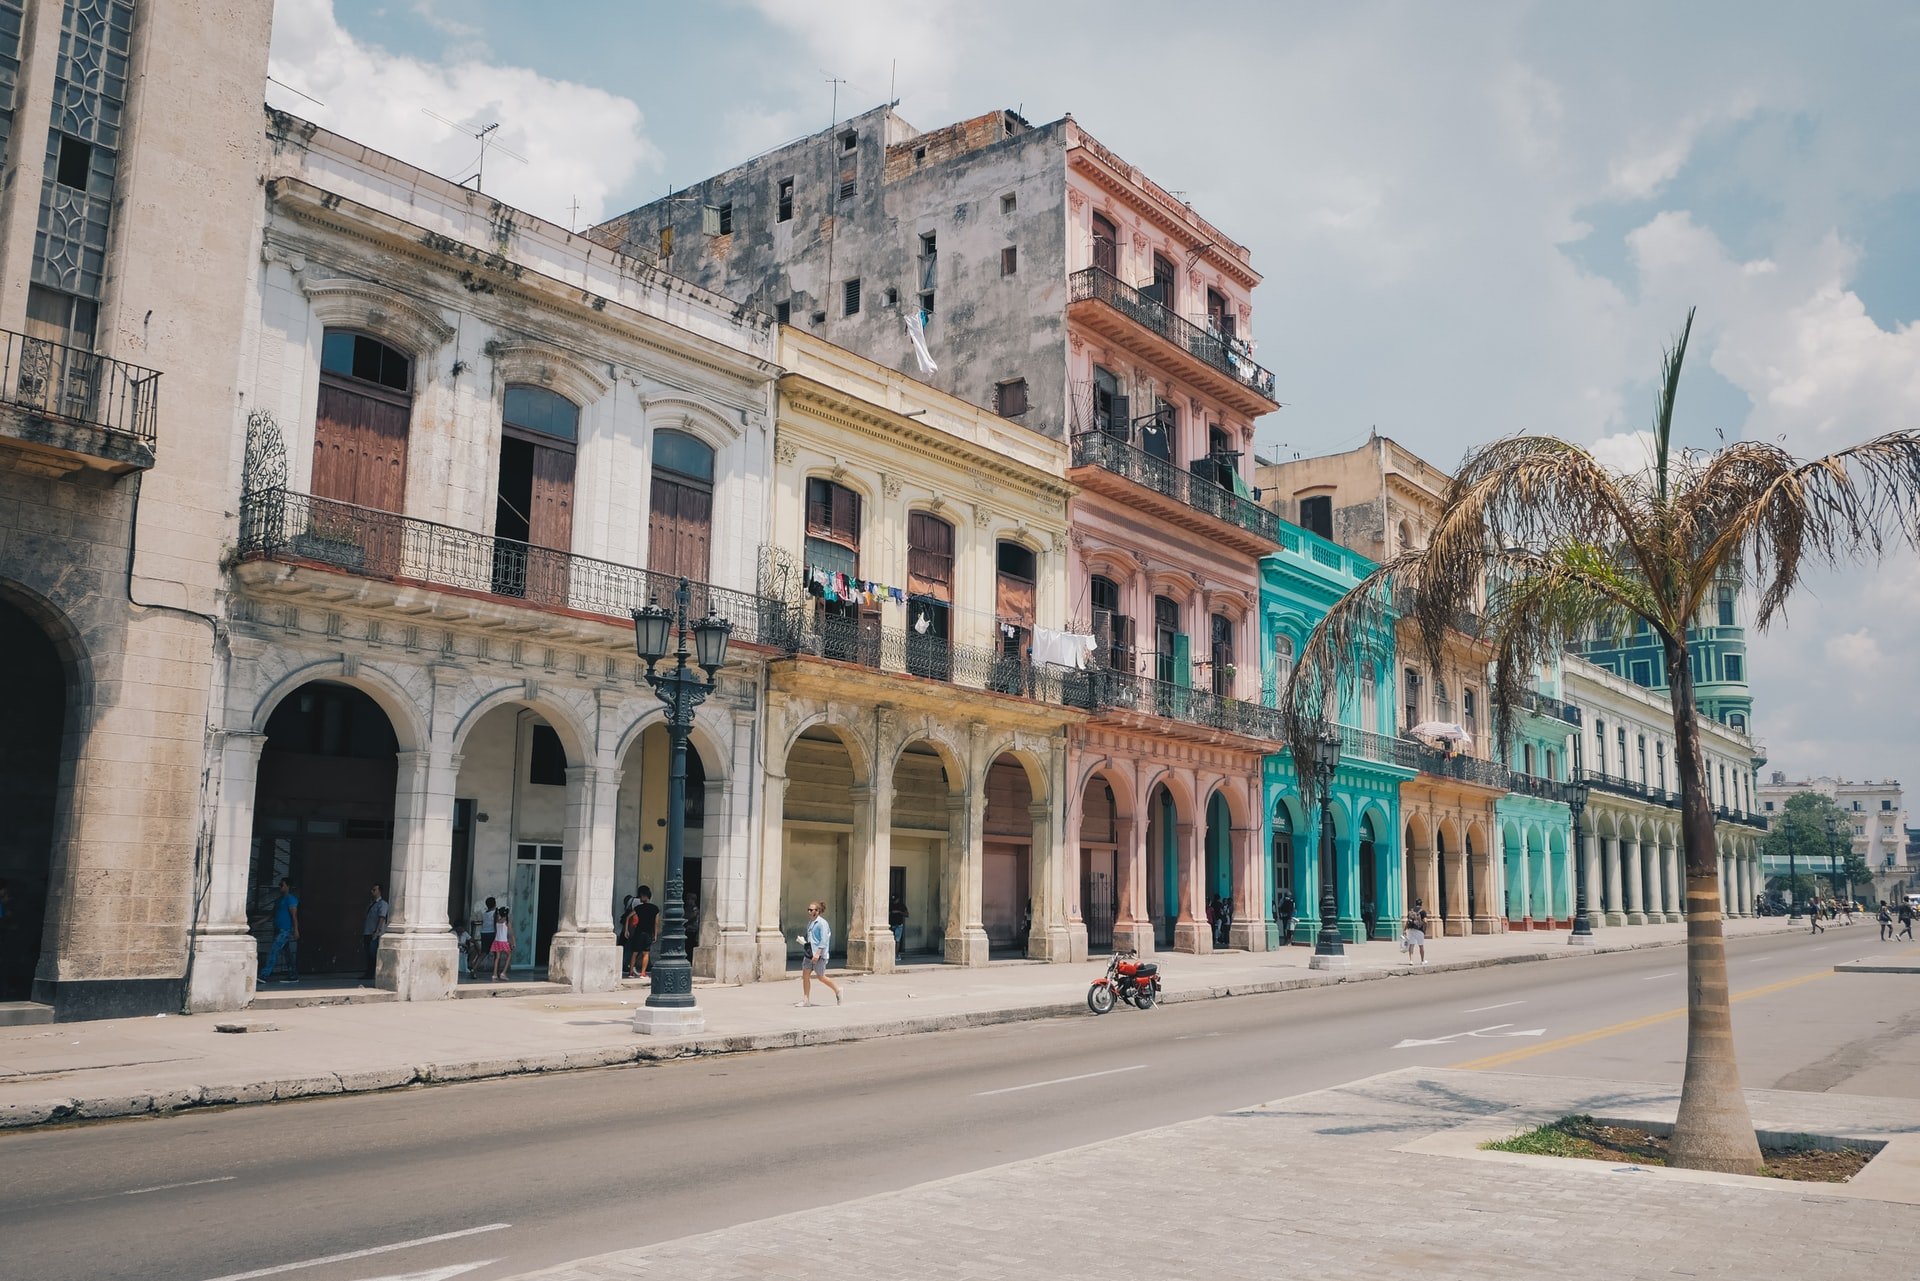 Vacances Cuba – Tout ce que vous devez savoir avant de partir